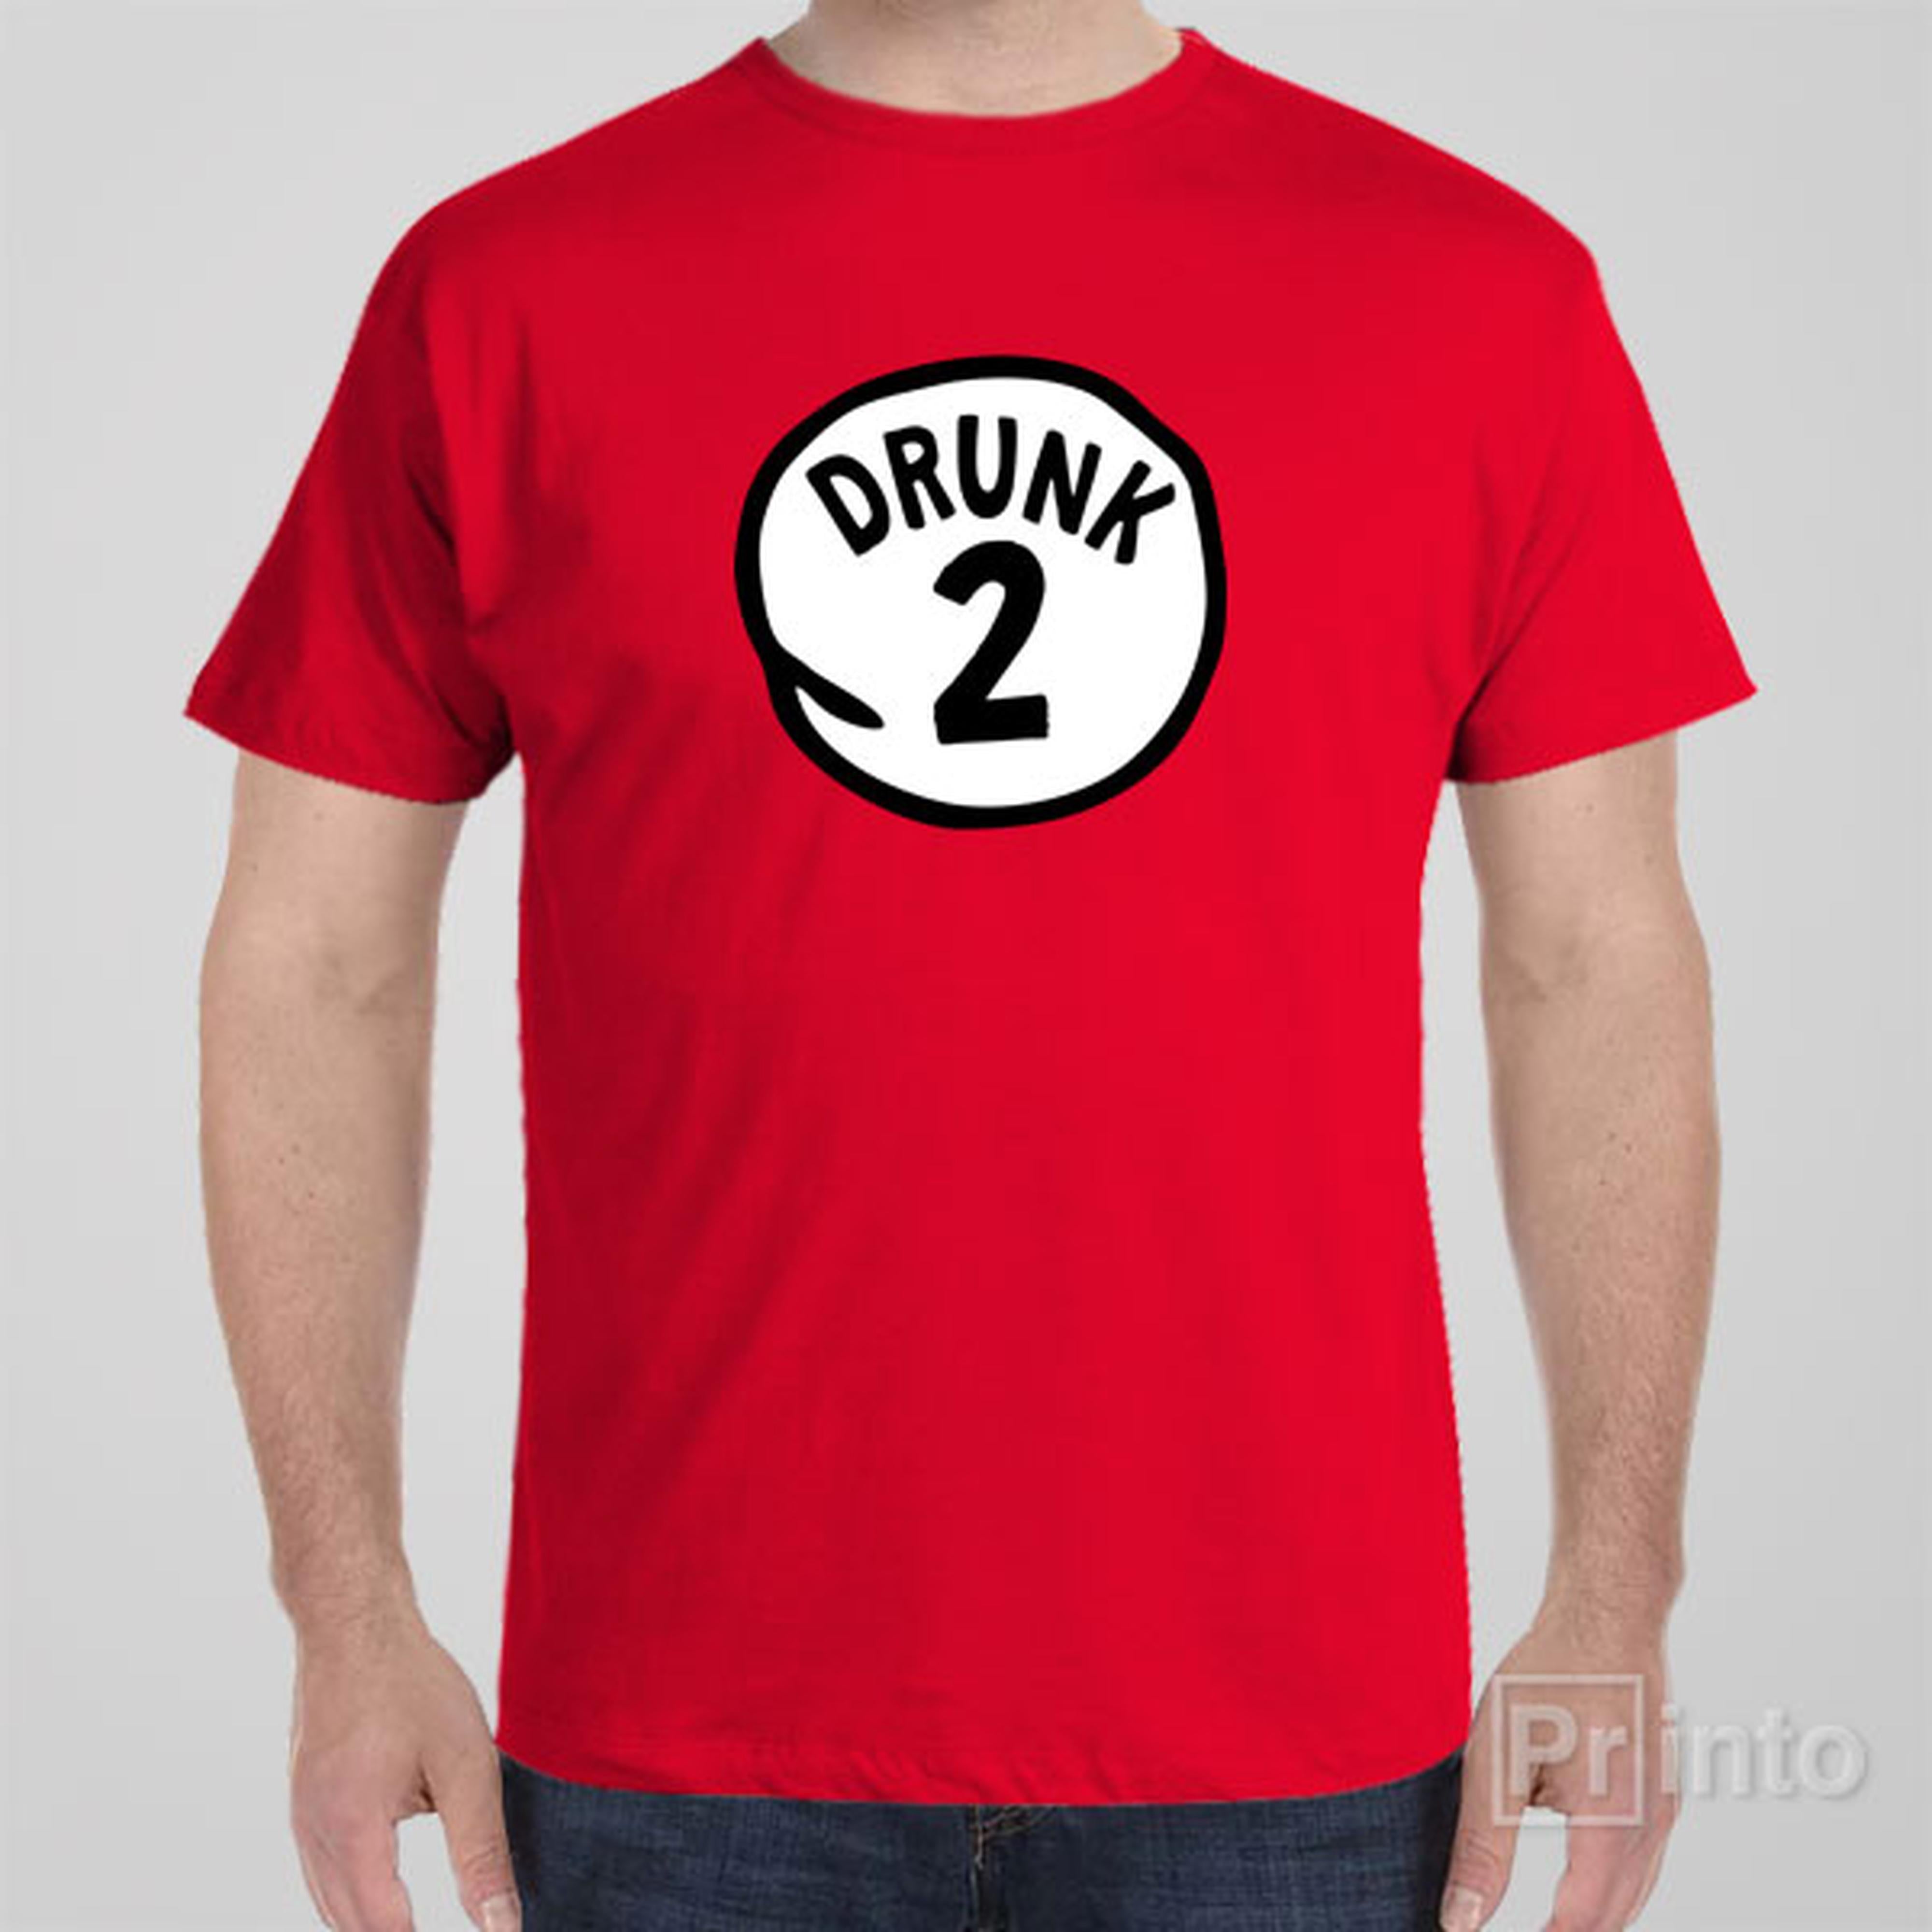 drunk-2-t-shirt